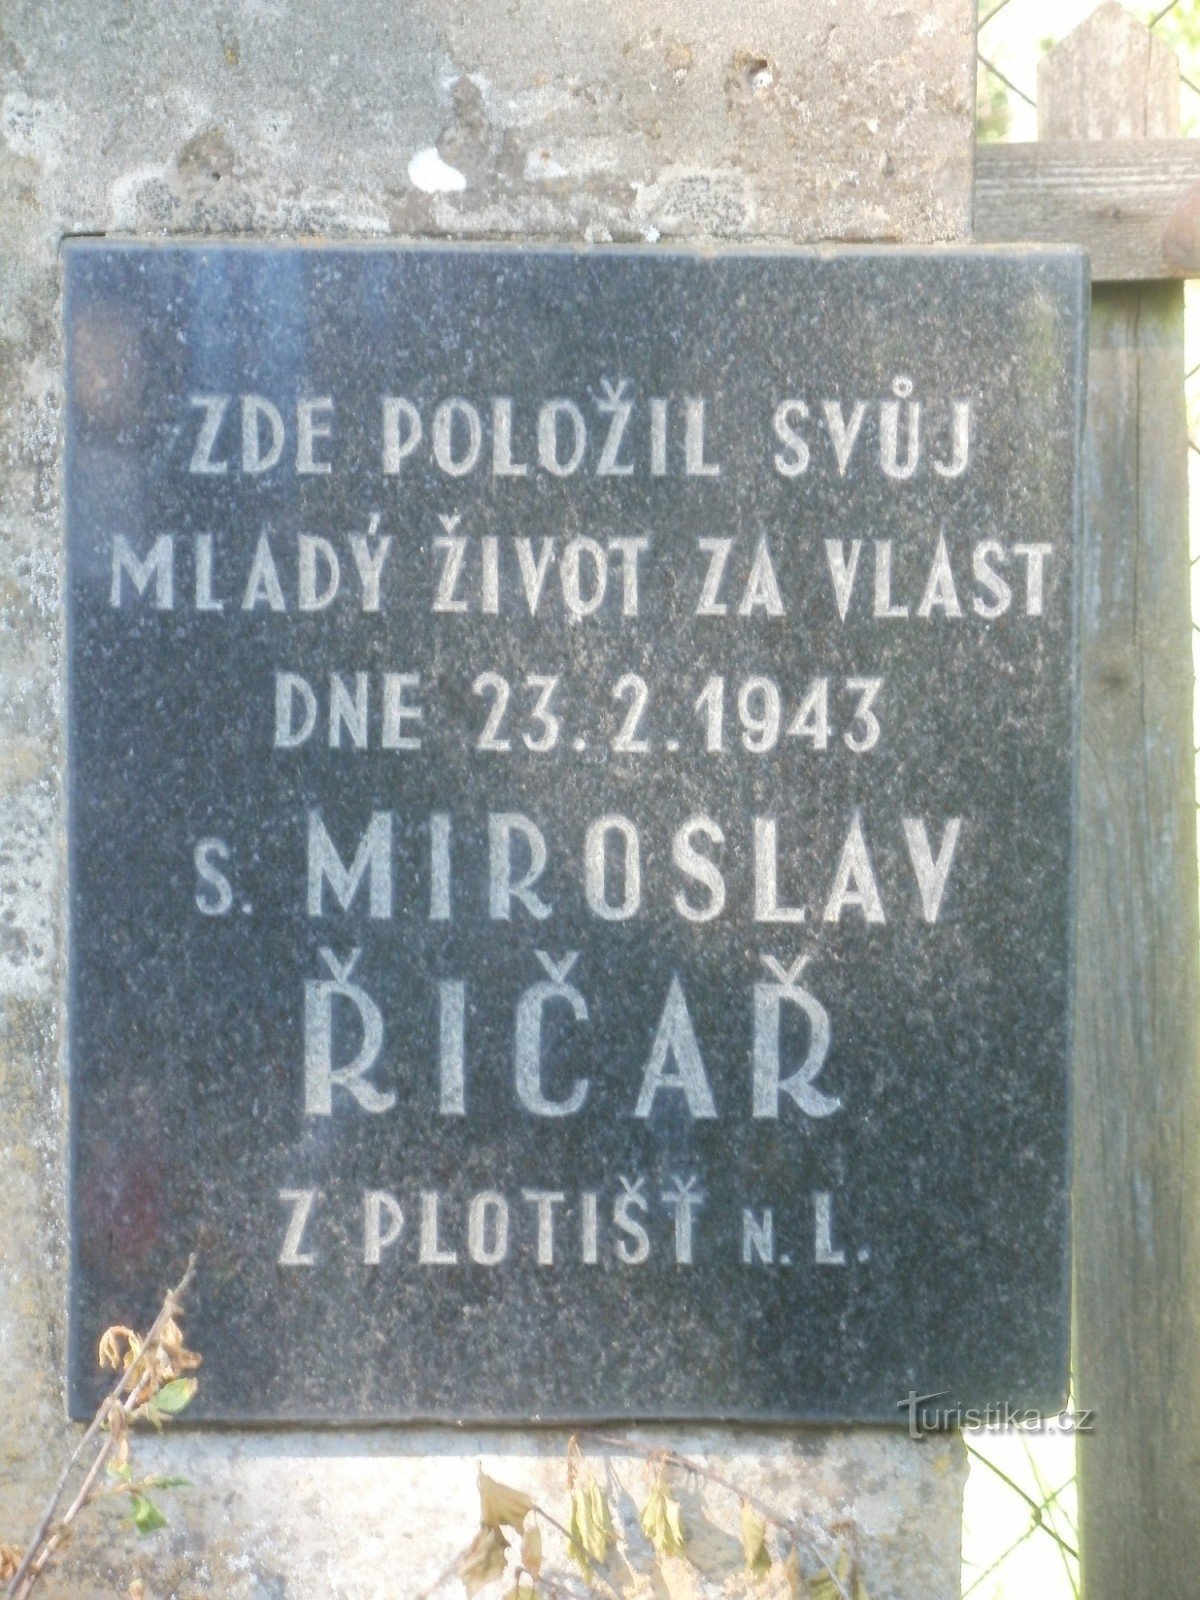 memorial to Mr. Říčař near Týniště nad Orlicí